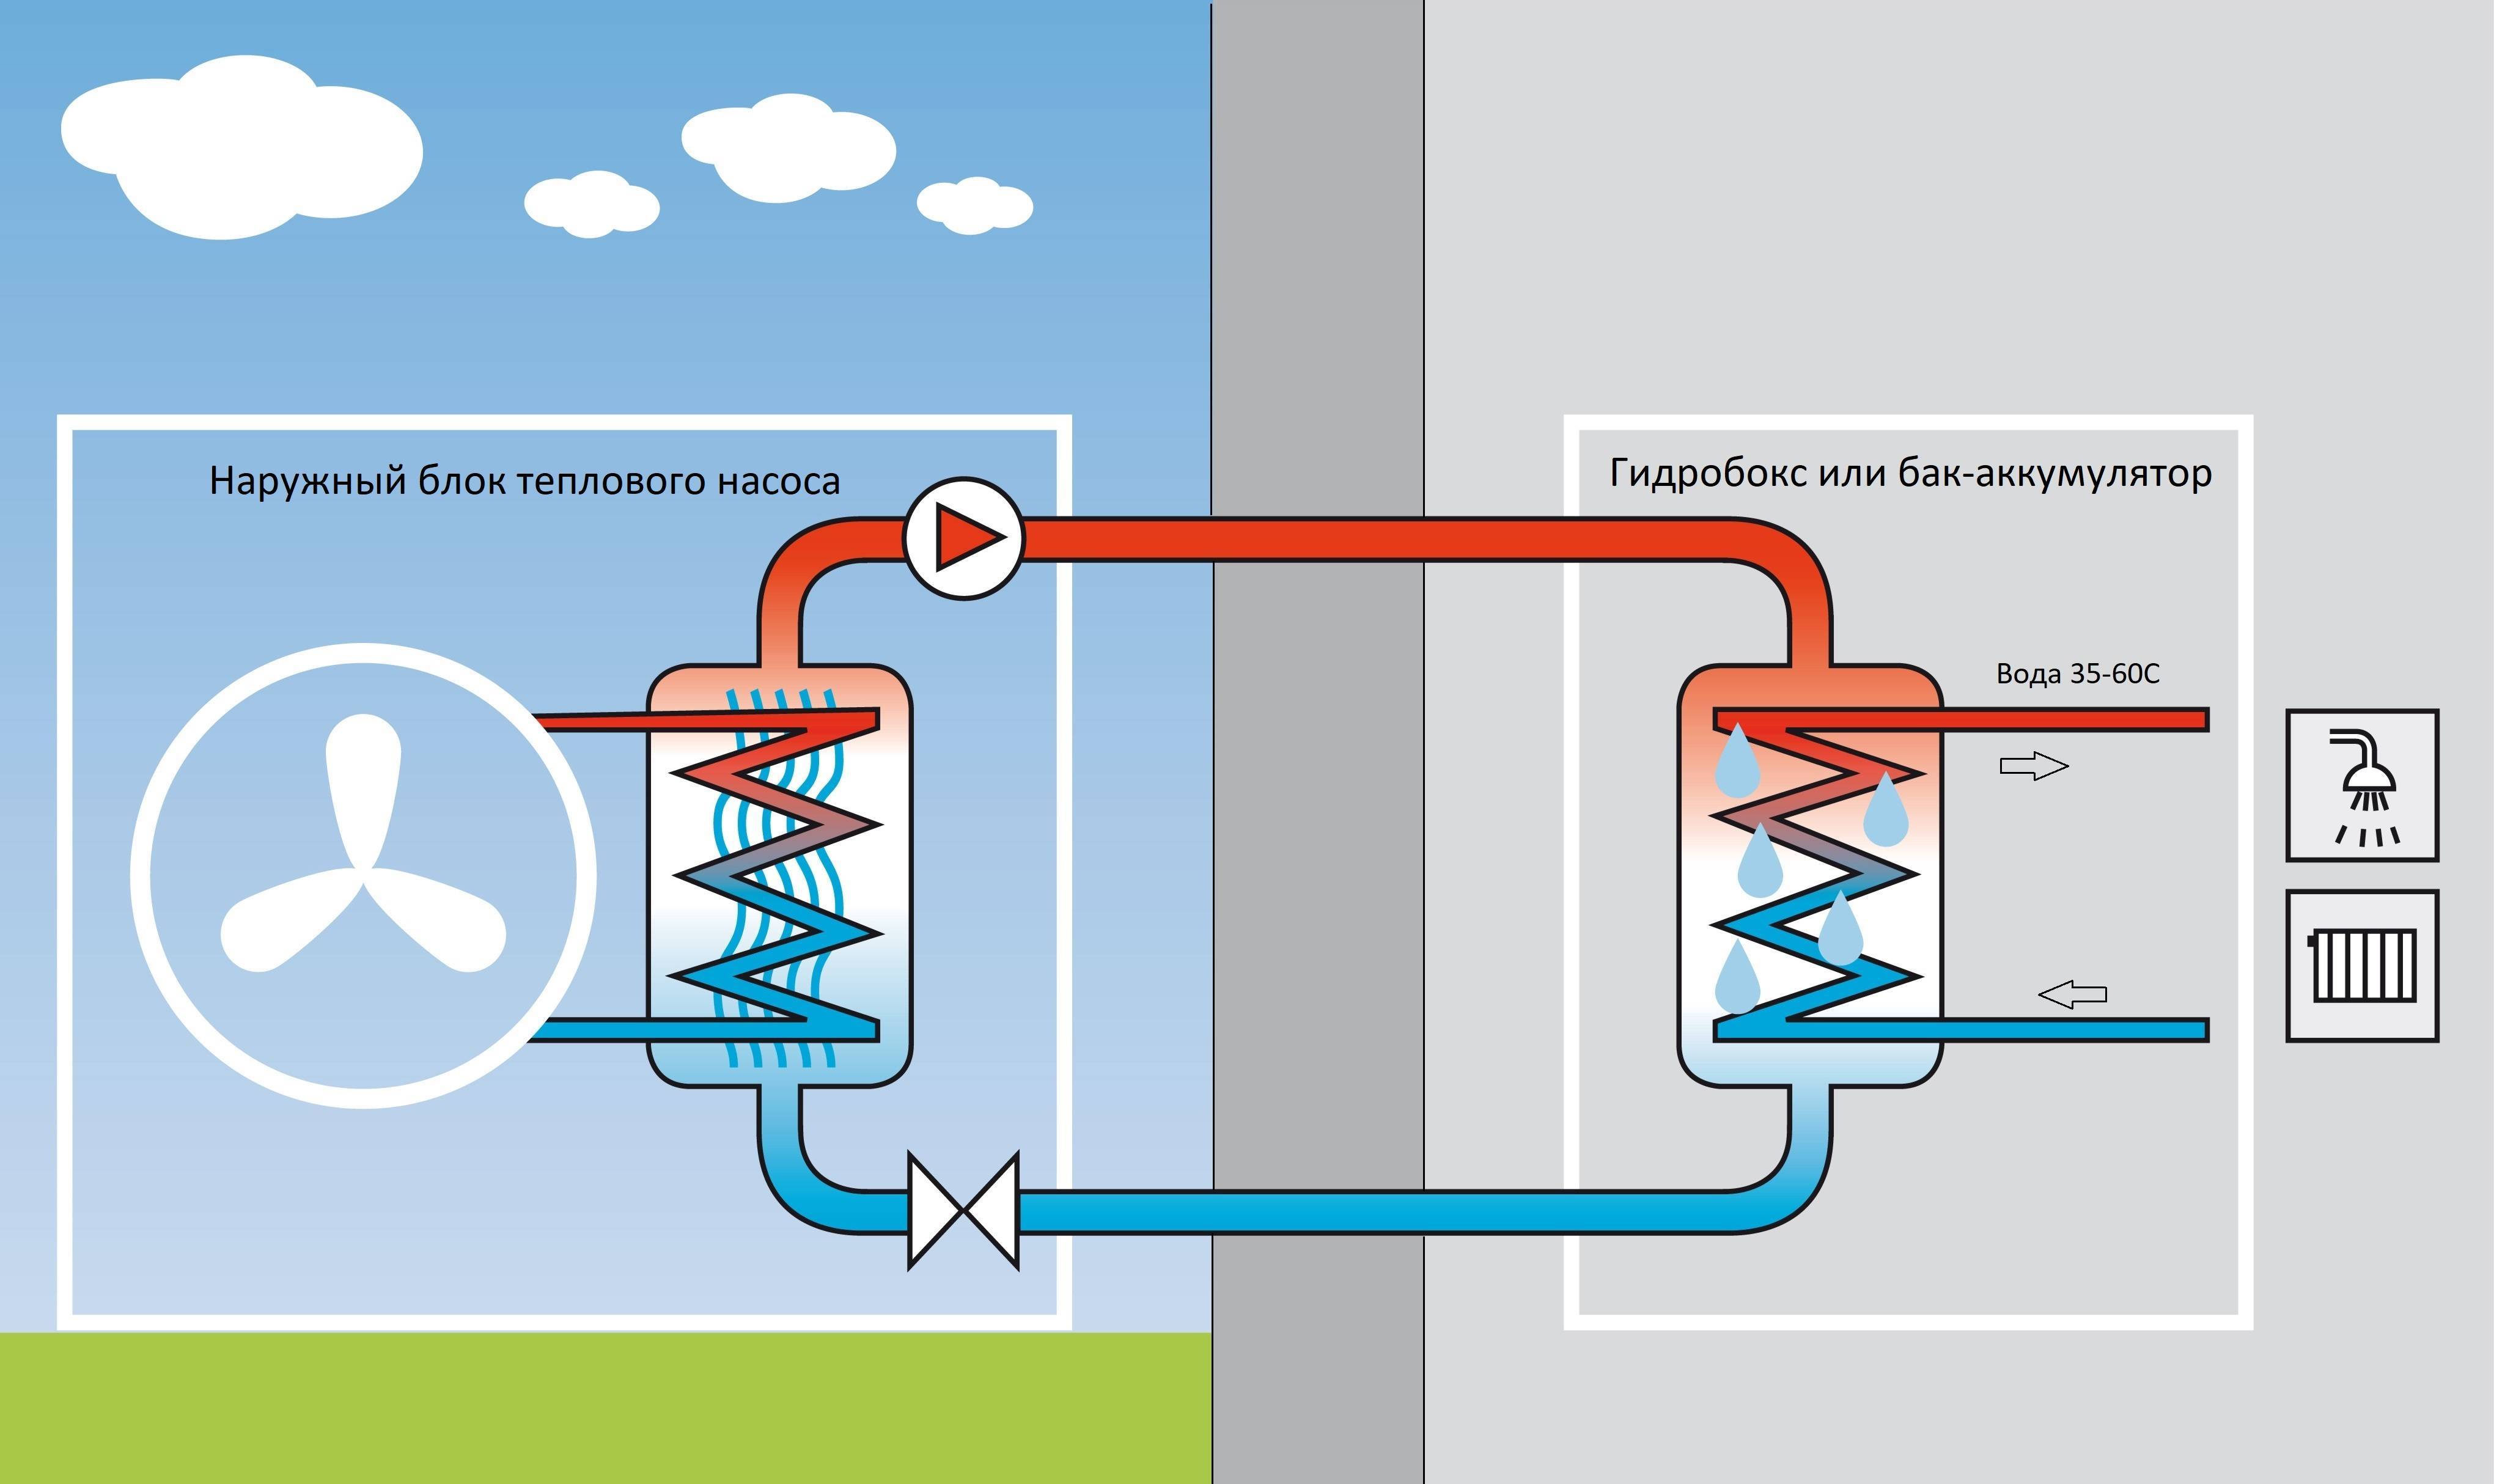 Как работает тепловой насос системы воздух-воздух, секреты расчета и выбора